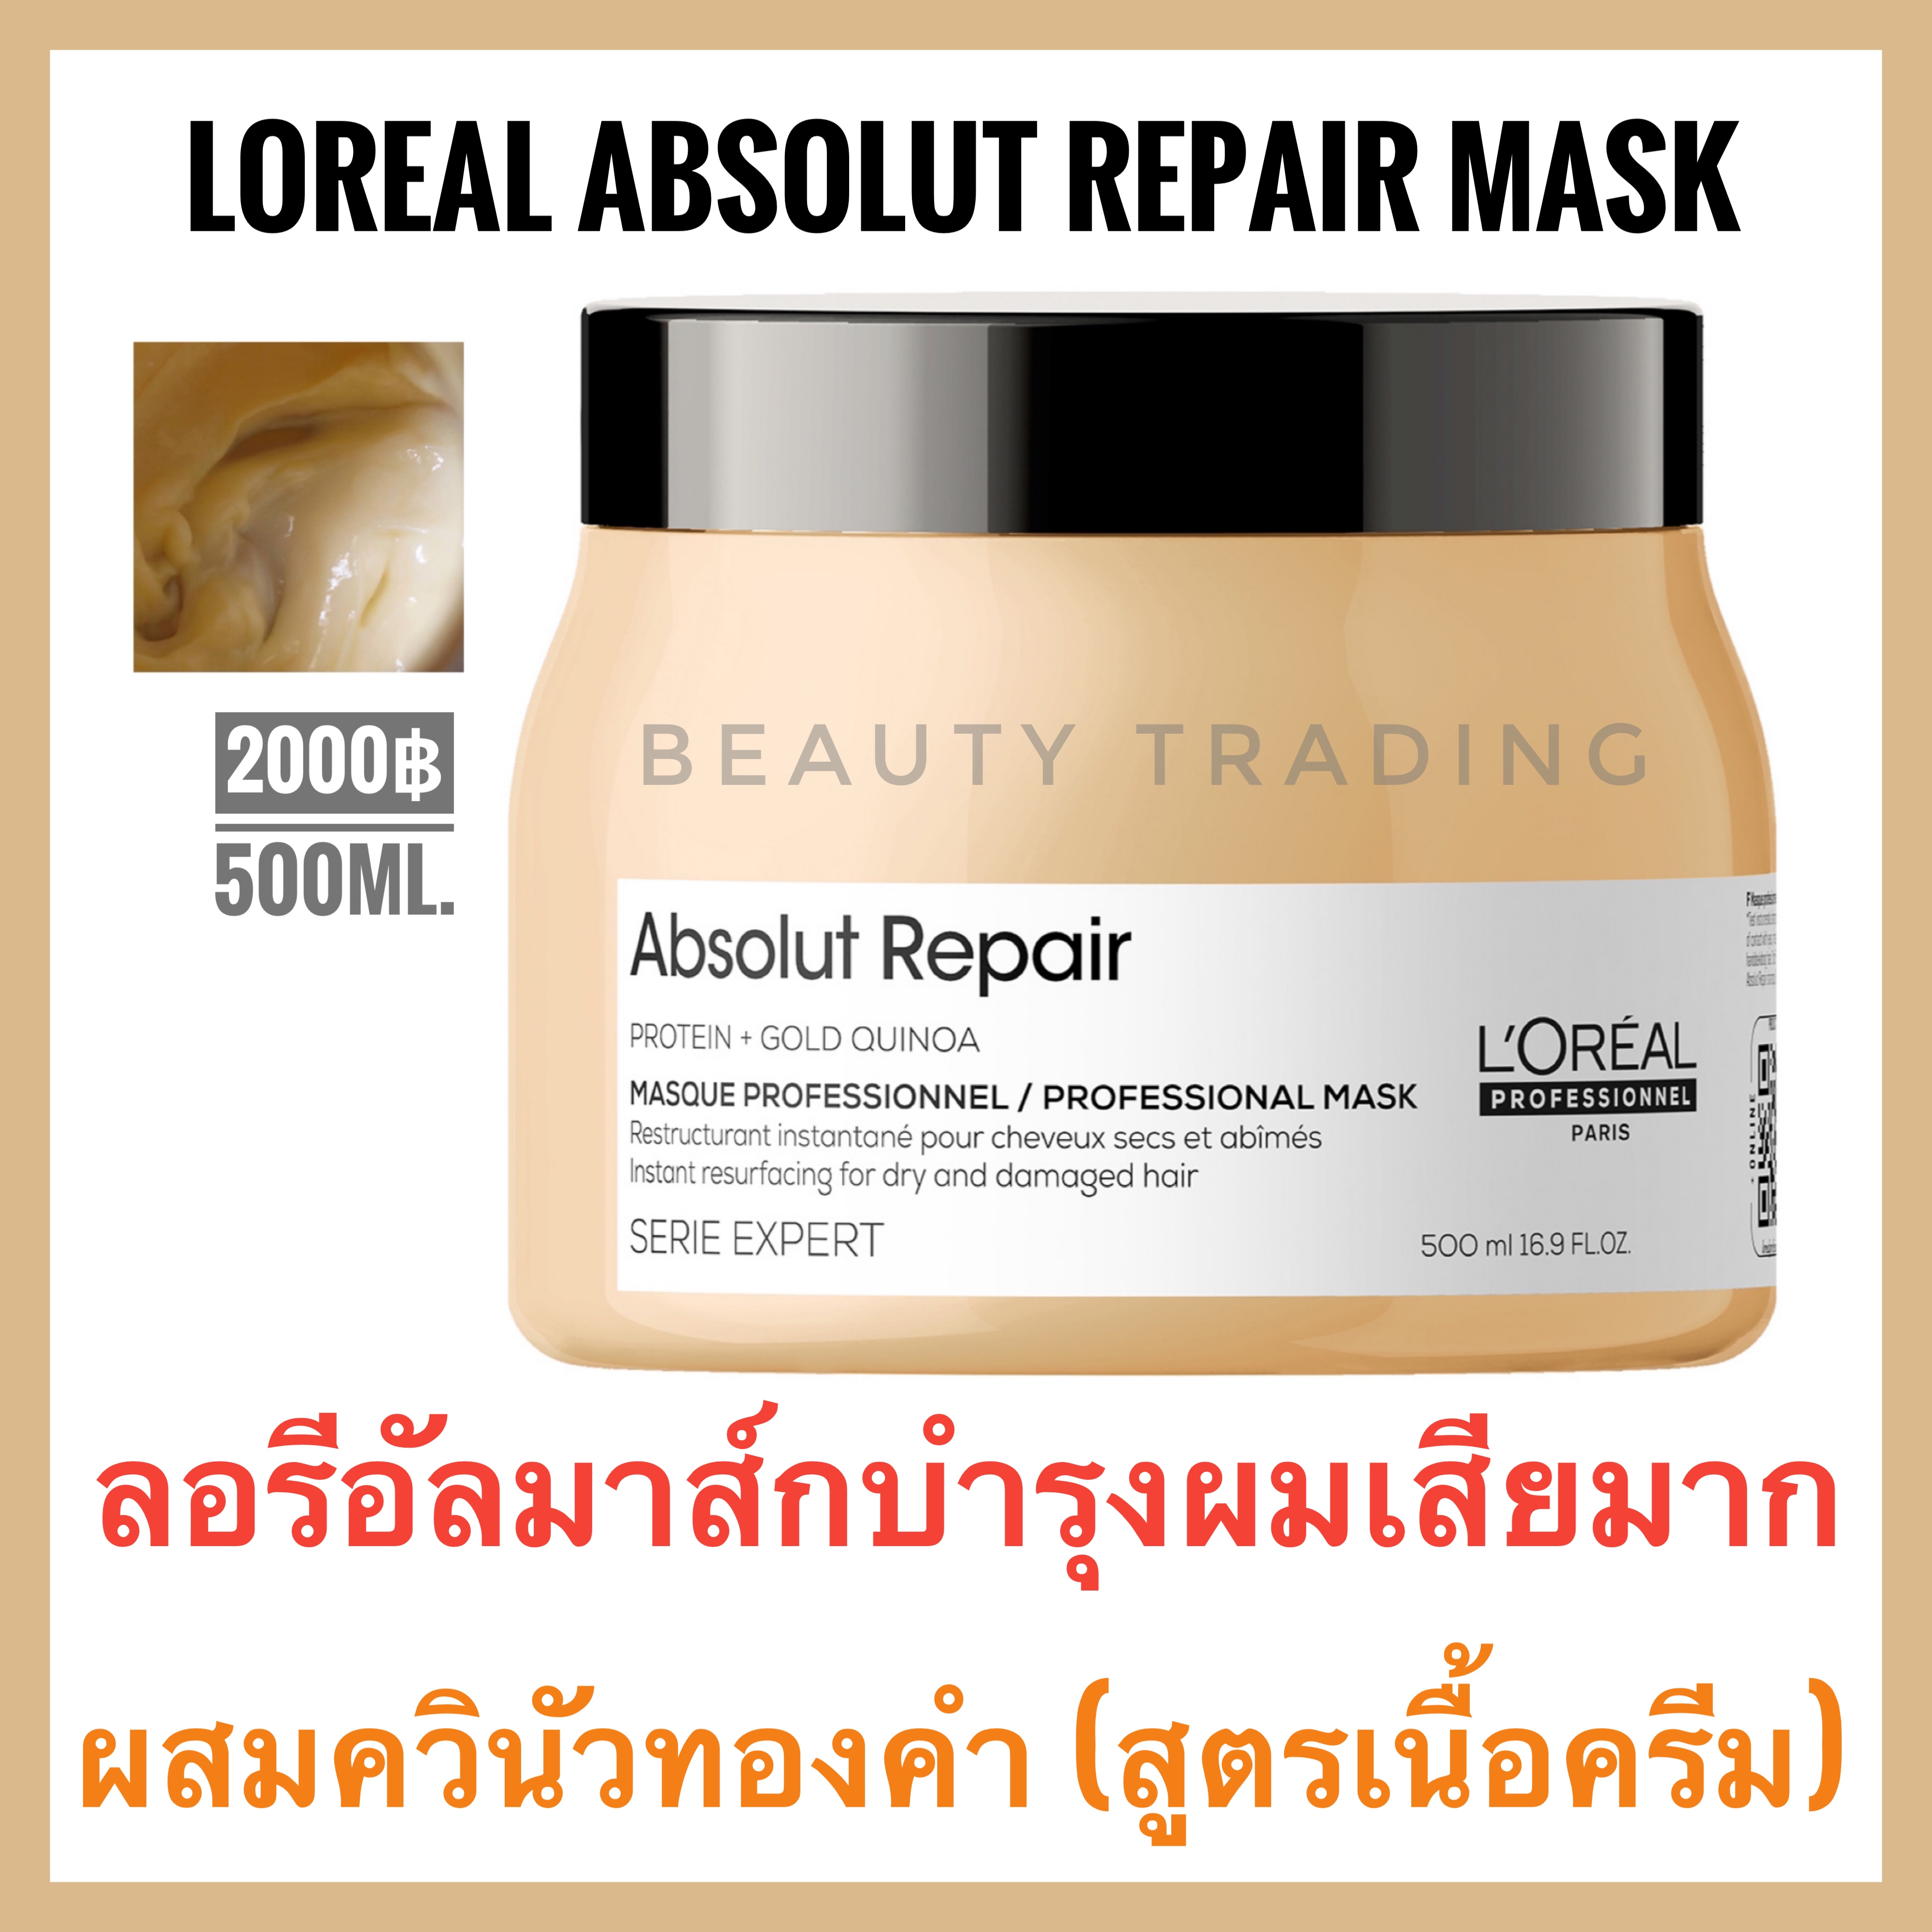 โปรโมชั่น มาส์กผมเสียพรุน Loreal Serie Expert Absolut Repair Masque 500ml. ลอรีอัล แอ็ปโซลูท รีแพร์ มาส์ก Loreal Absolute Repair Mask